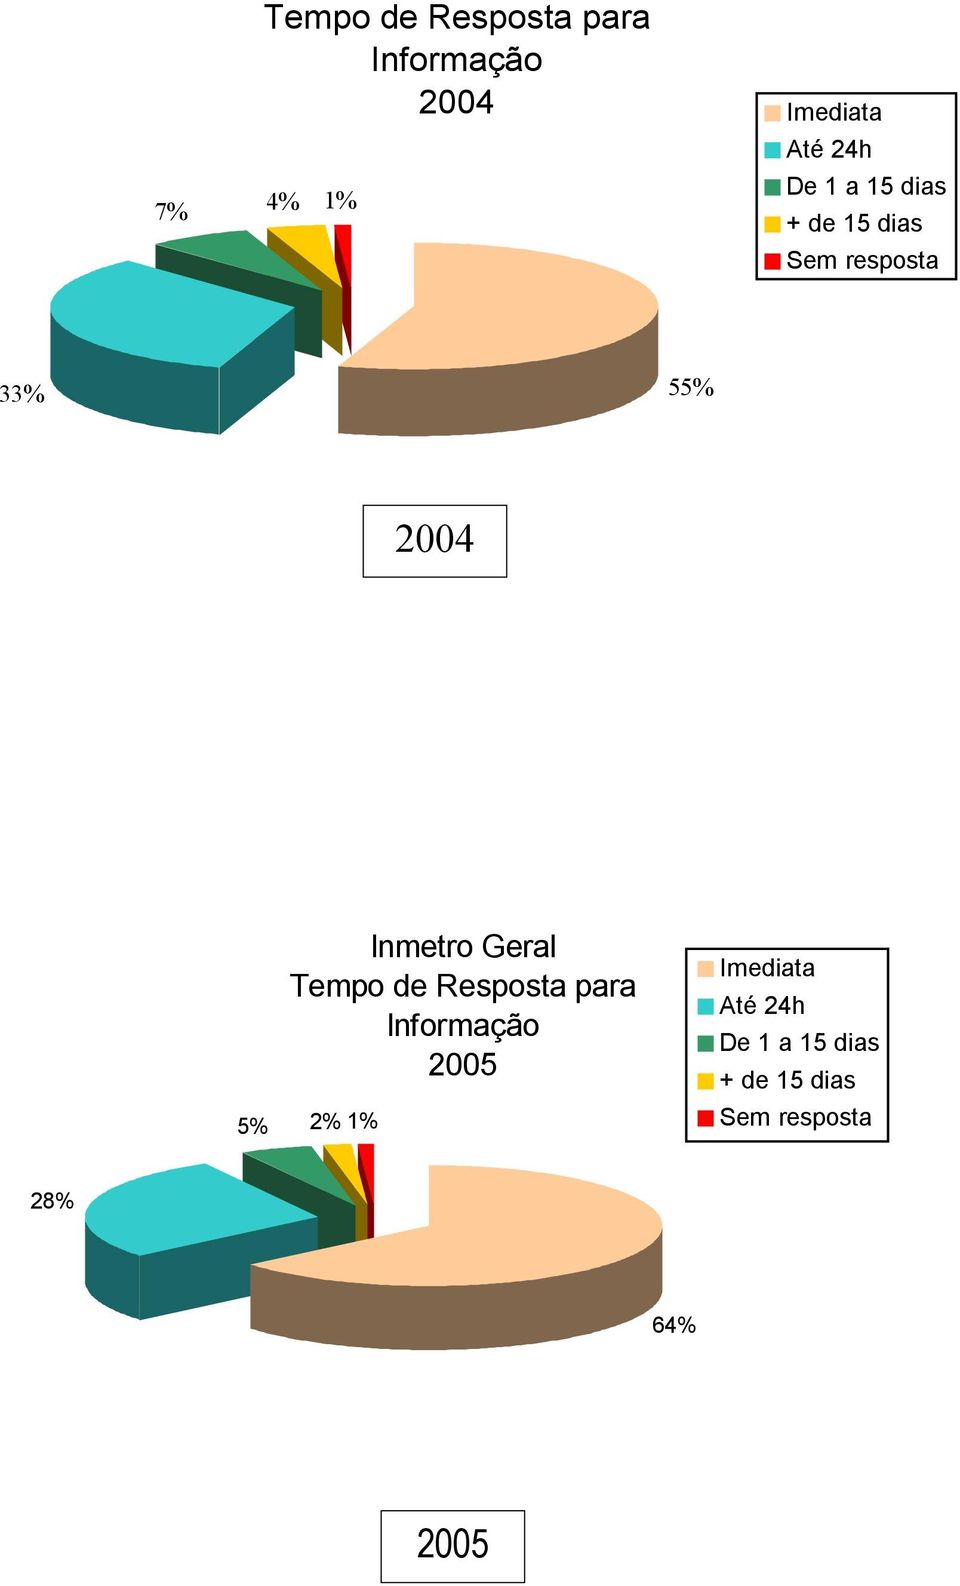 Inmetro Geral Tempo de Resposta para Informação 2005 5% 2% 1%